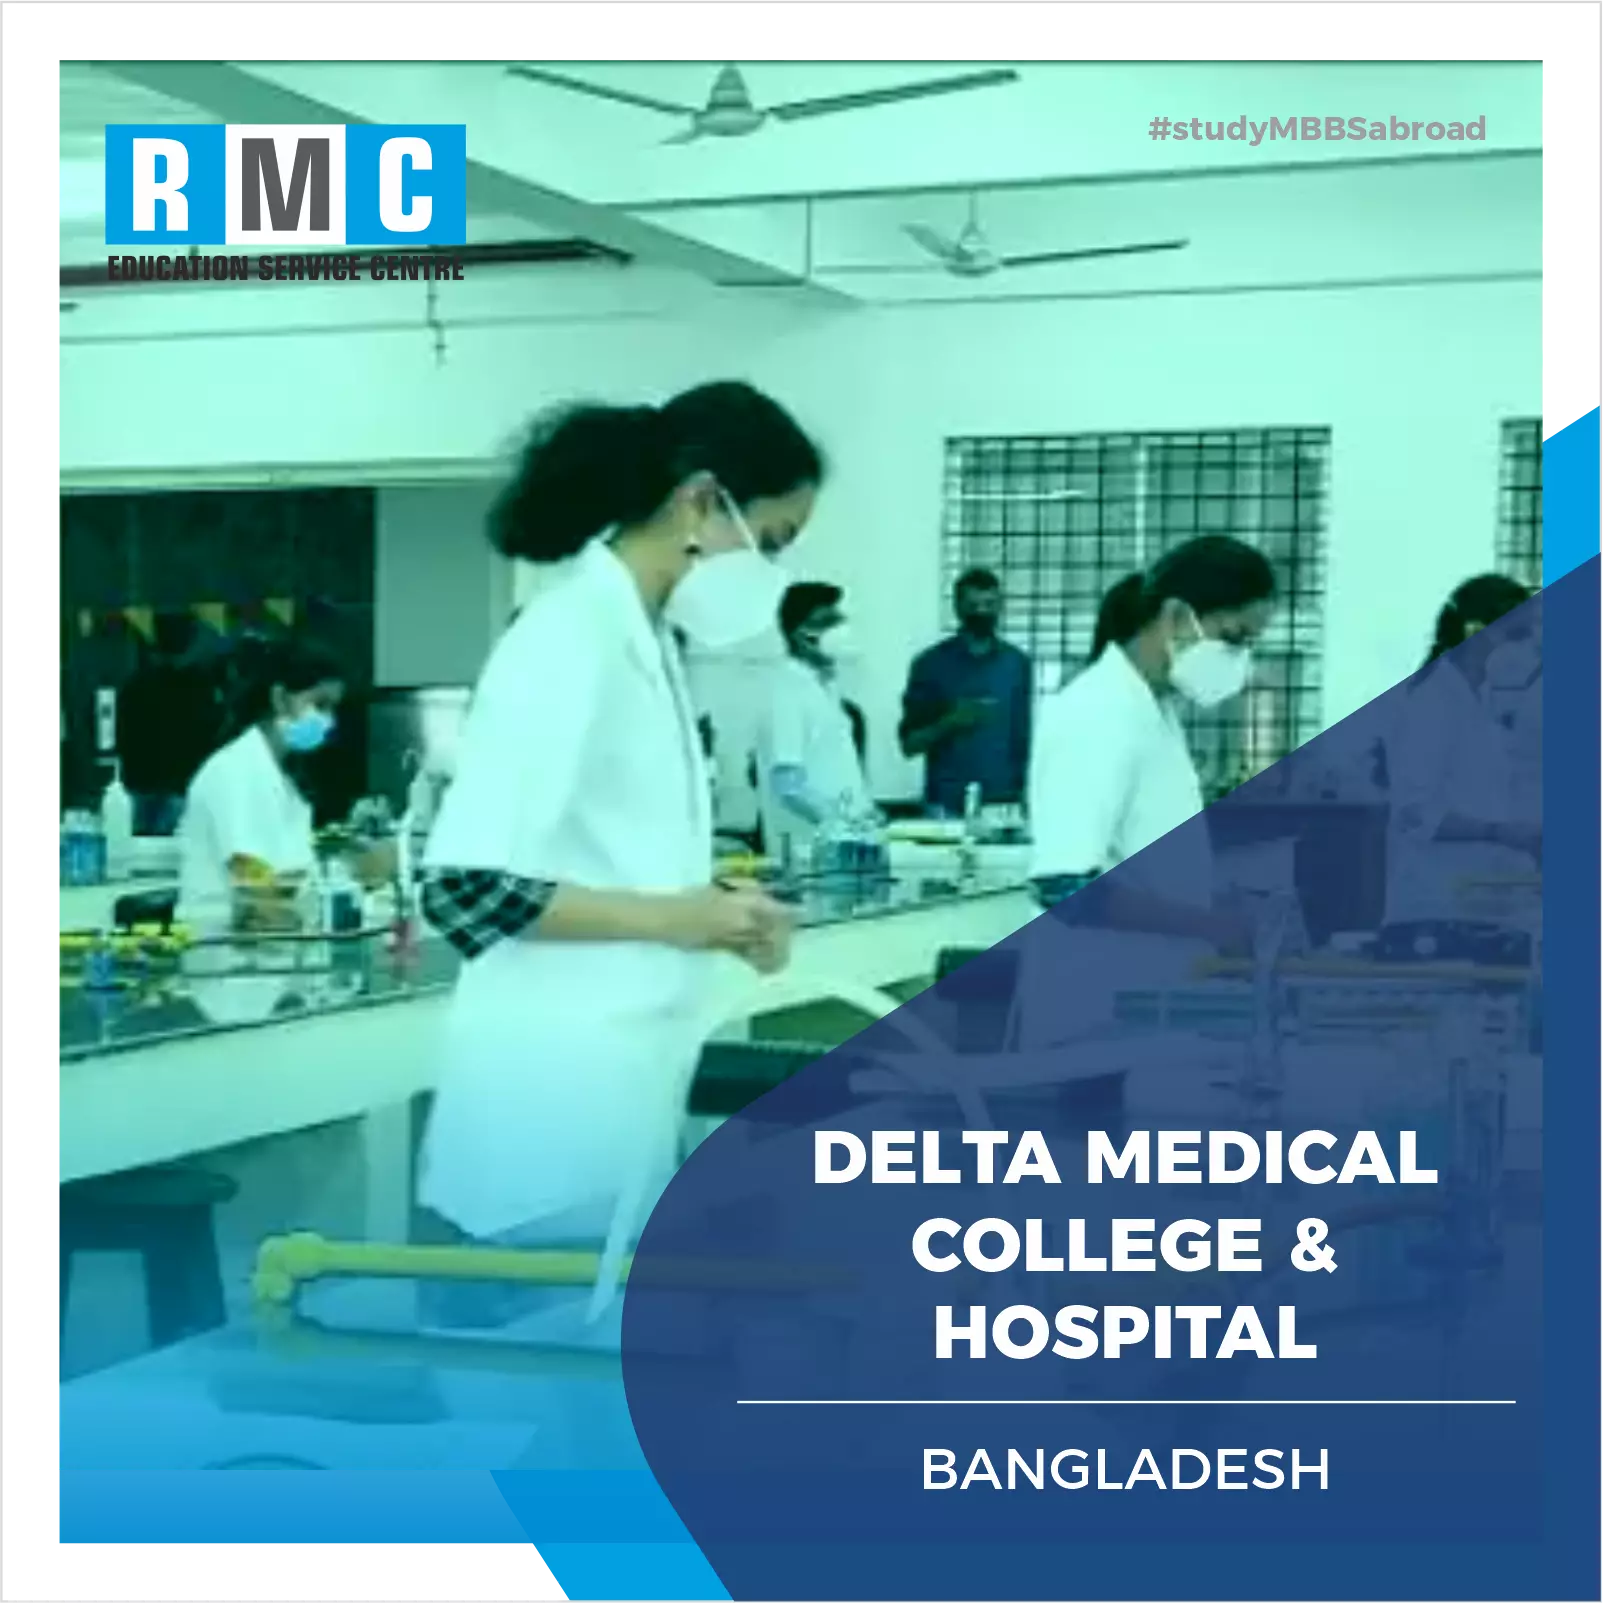 Delta Medical College & Hospital